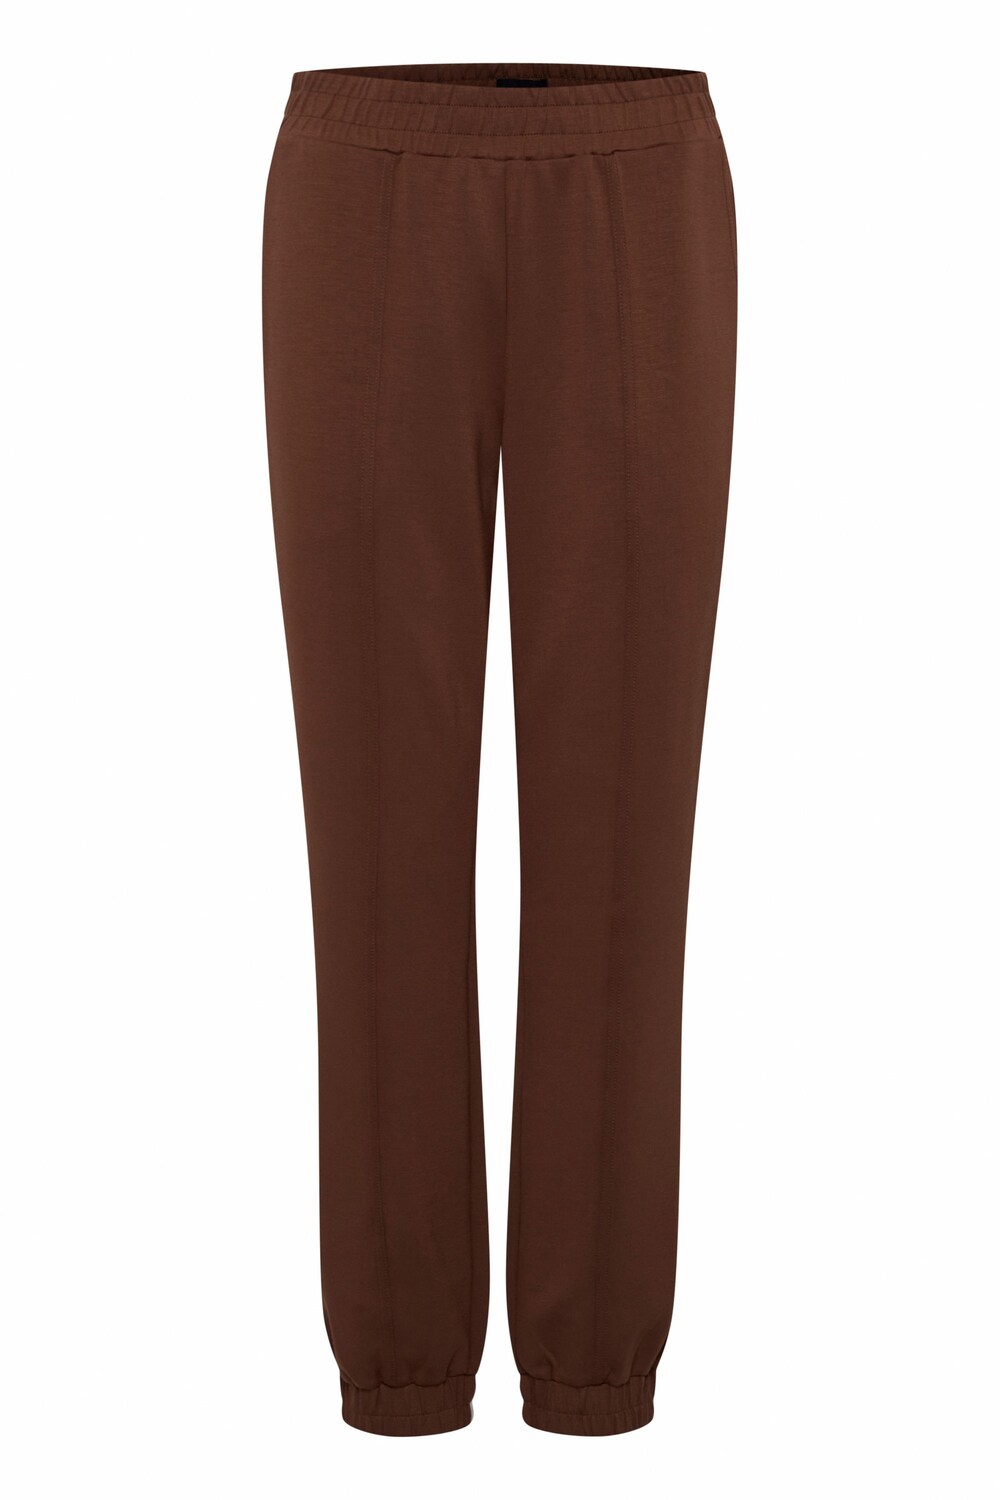 Свободные брюки Oxmo OXPEARL, коричневый